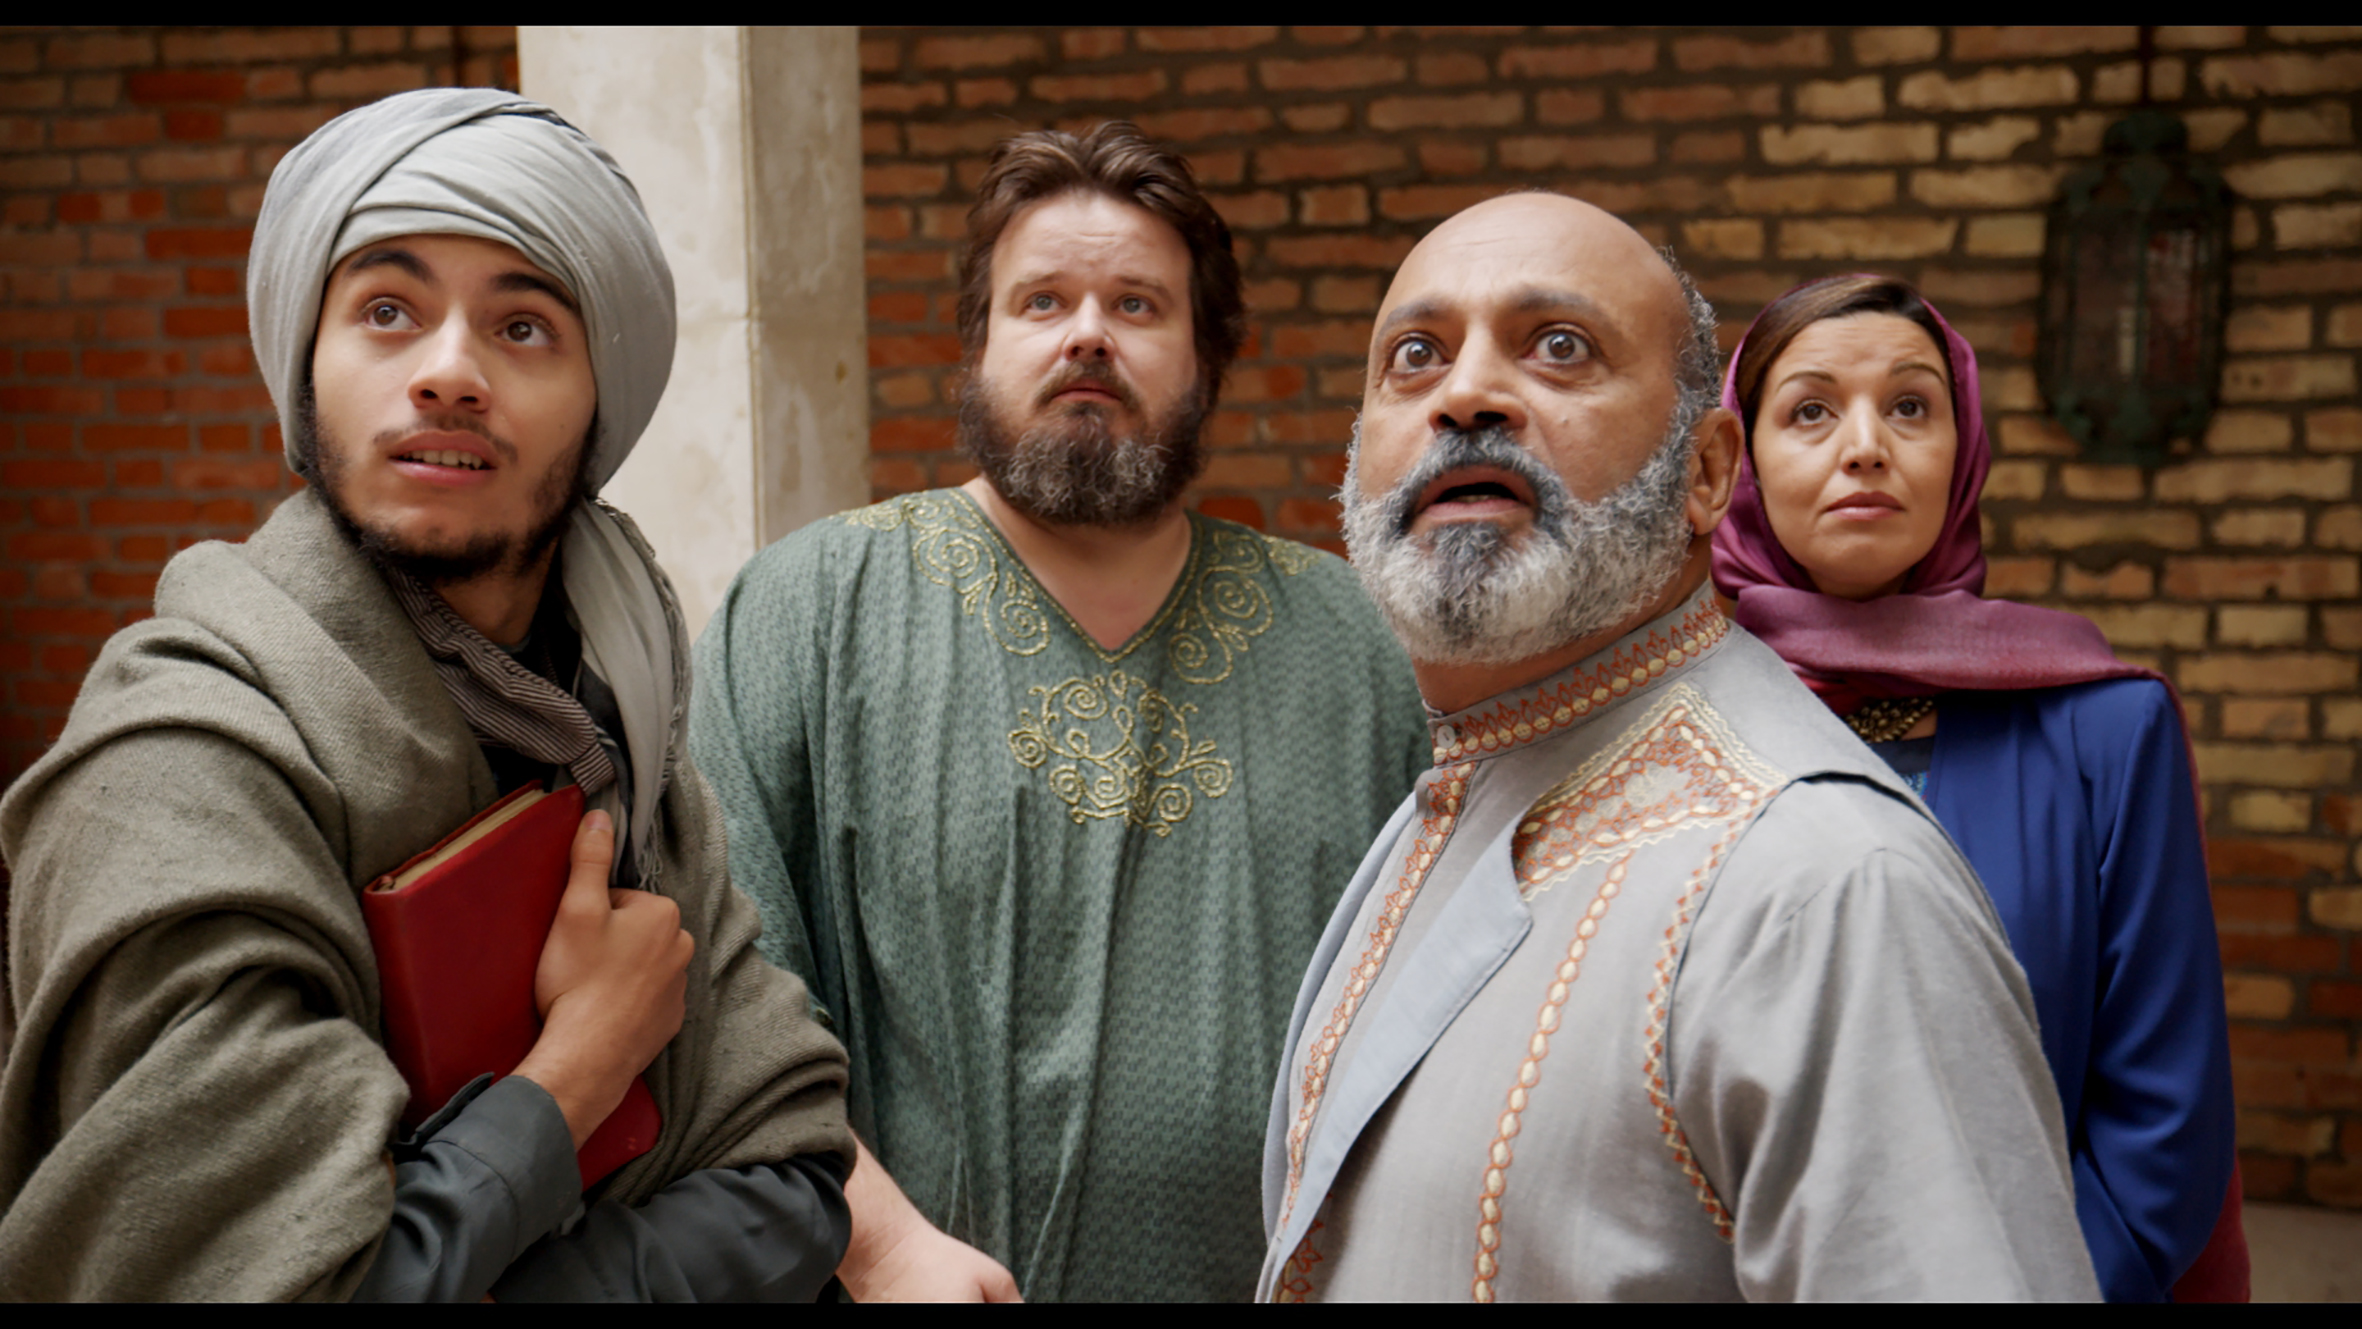 ‘Pitza e Datteri’ la commedia all’italiana sceglie Venezia per abbracciare l’Islam